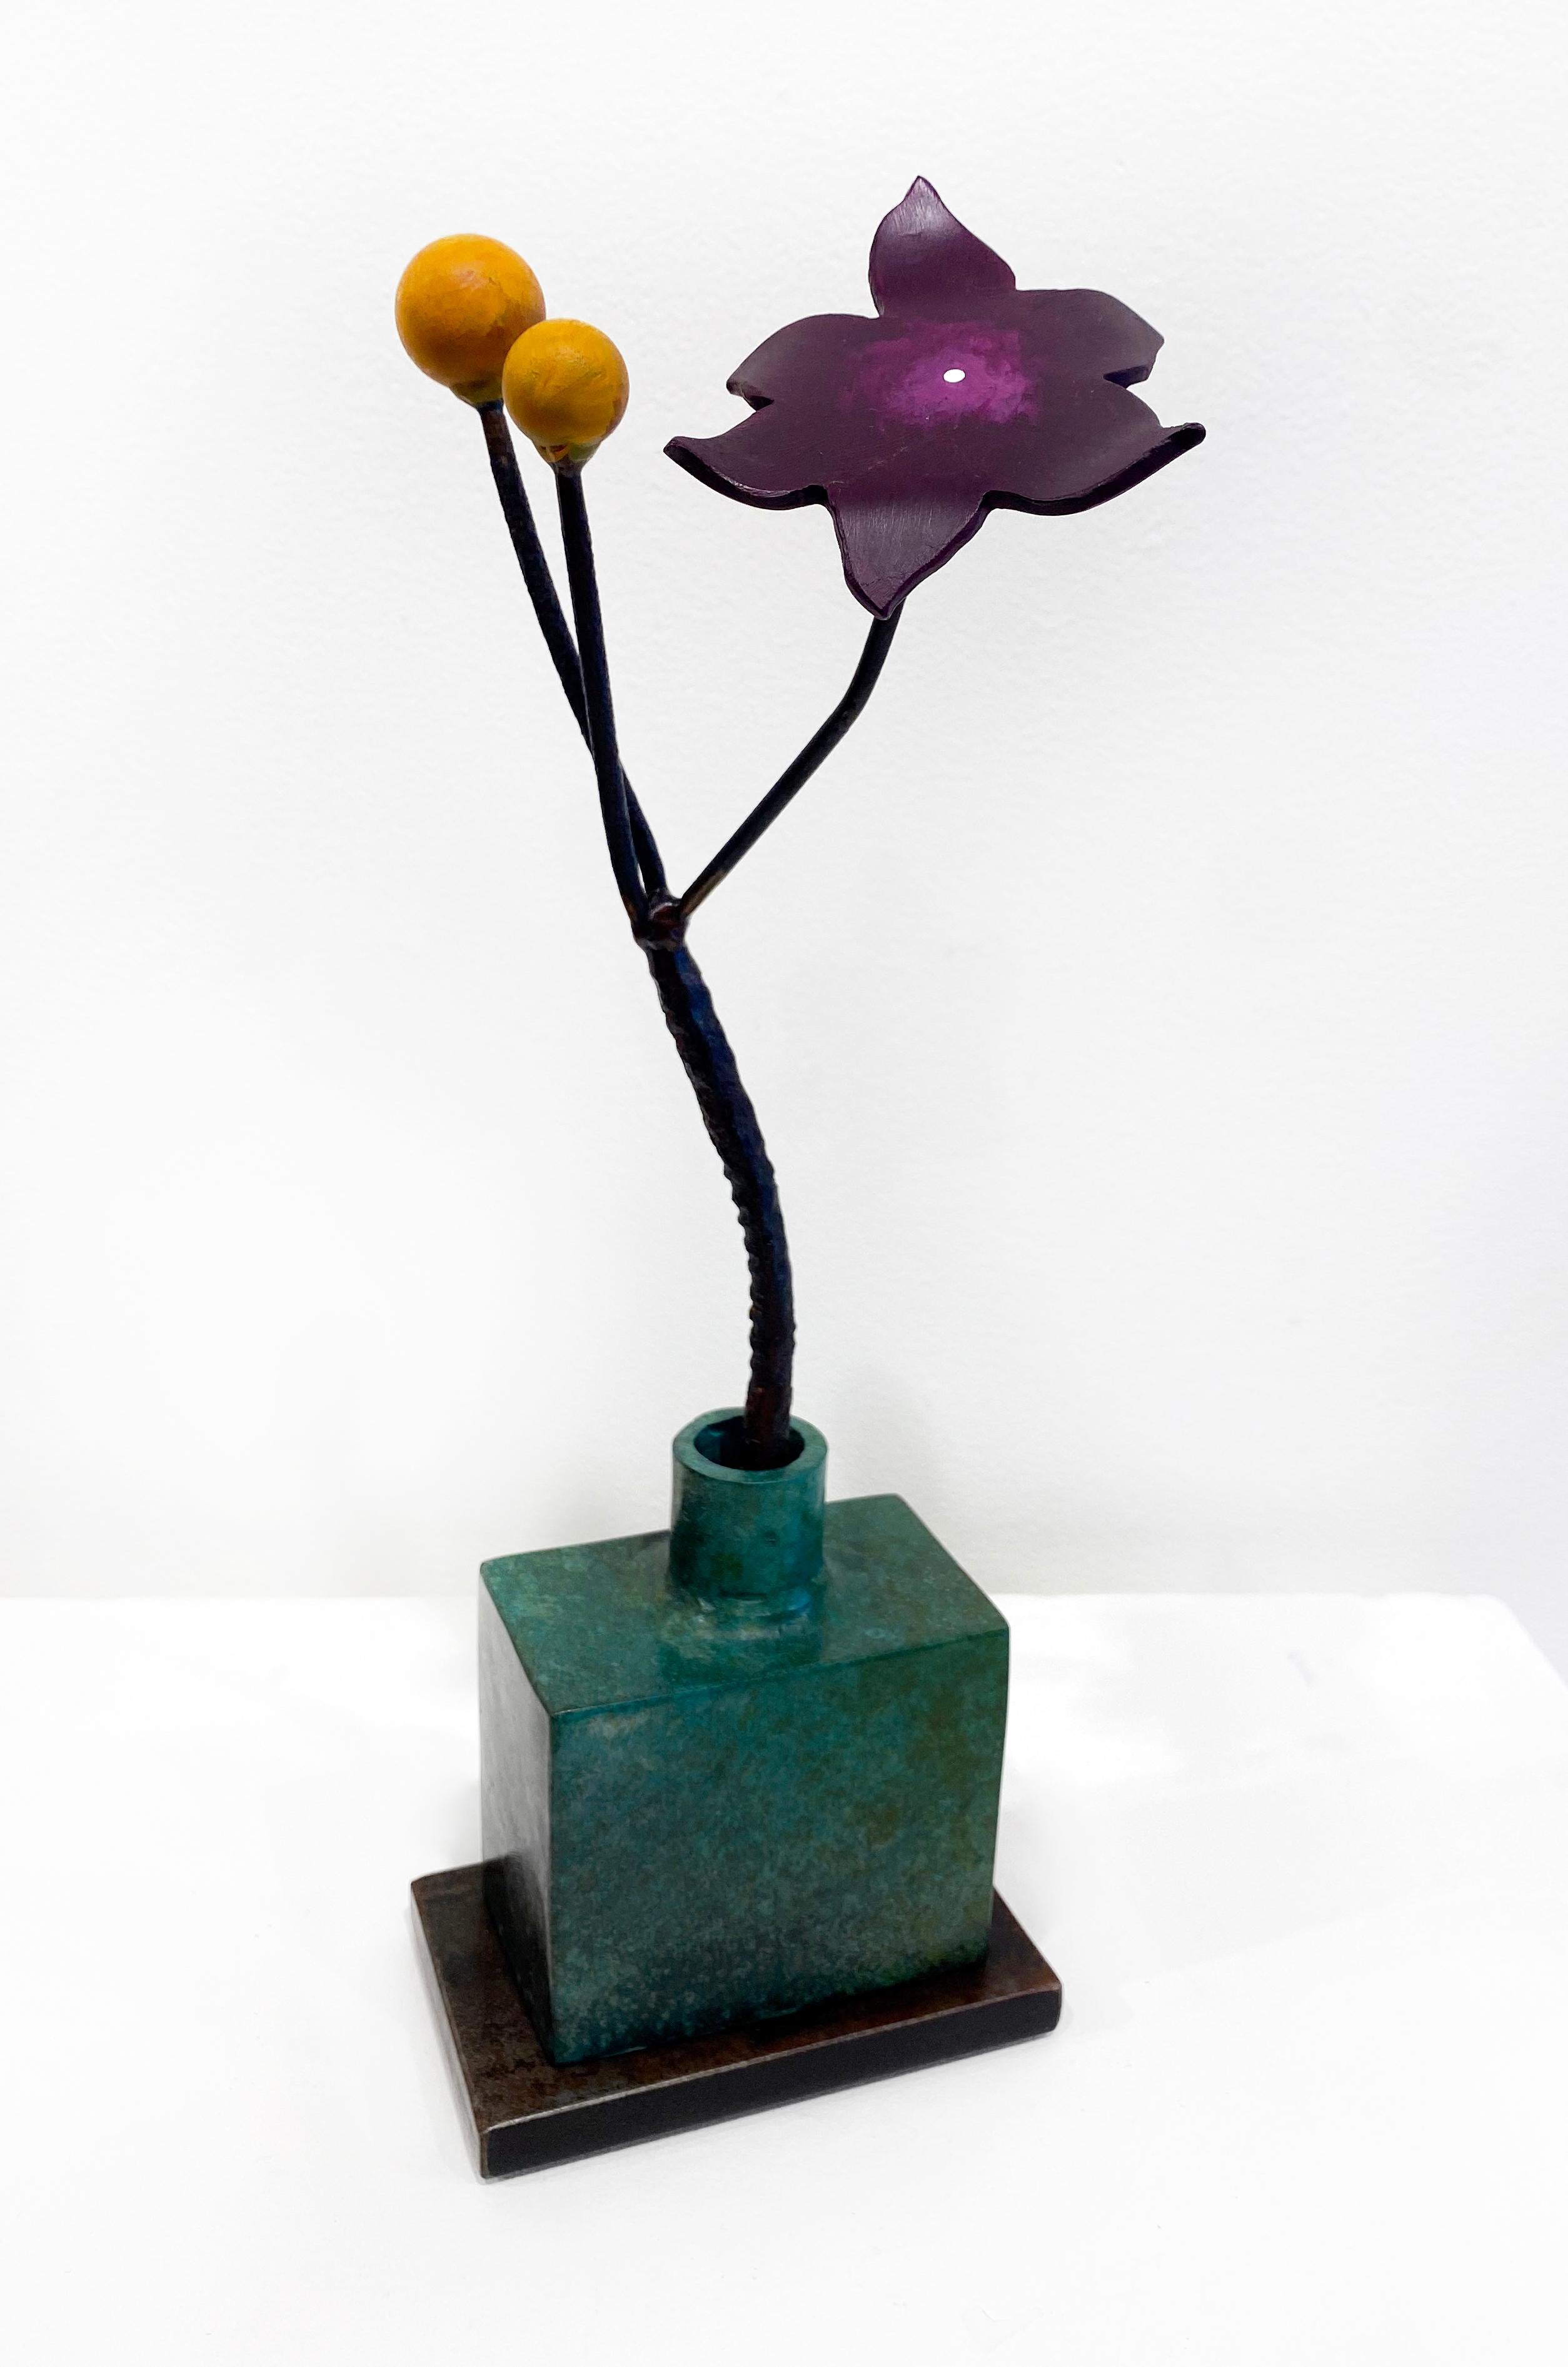 'Green Bottle Ochre Seeds' de David Kimball Anderson, 2022. Bronze, acier et peinture, 16 x 6 x 5 in. Cette sculpture présente un  vase carré moulé en bronze et fini avec une patine verte. Il s'agit d'une fleur en acier peinte en violet avec deux